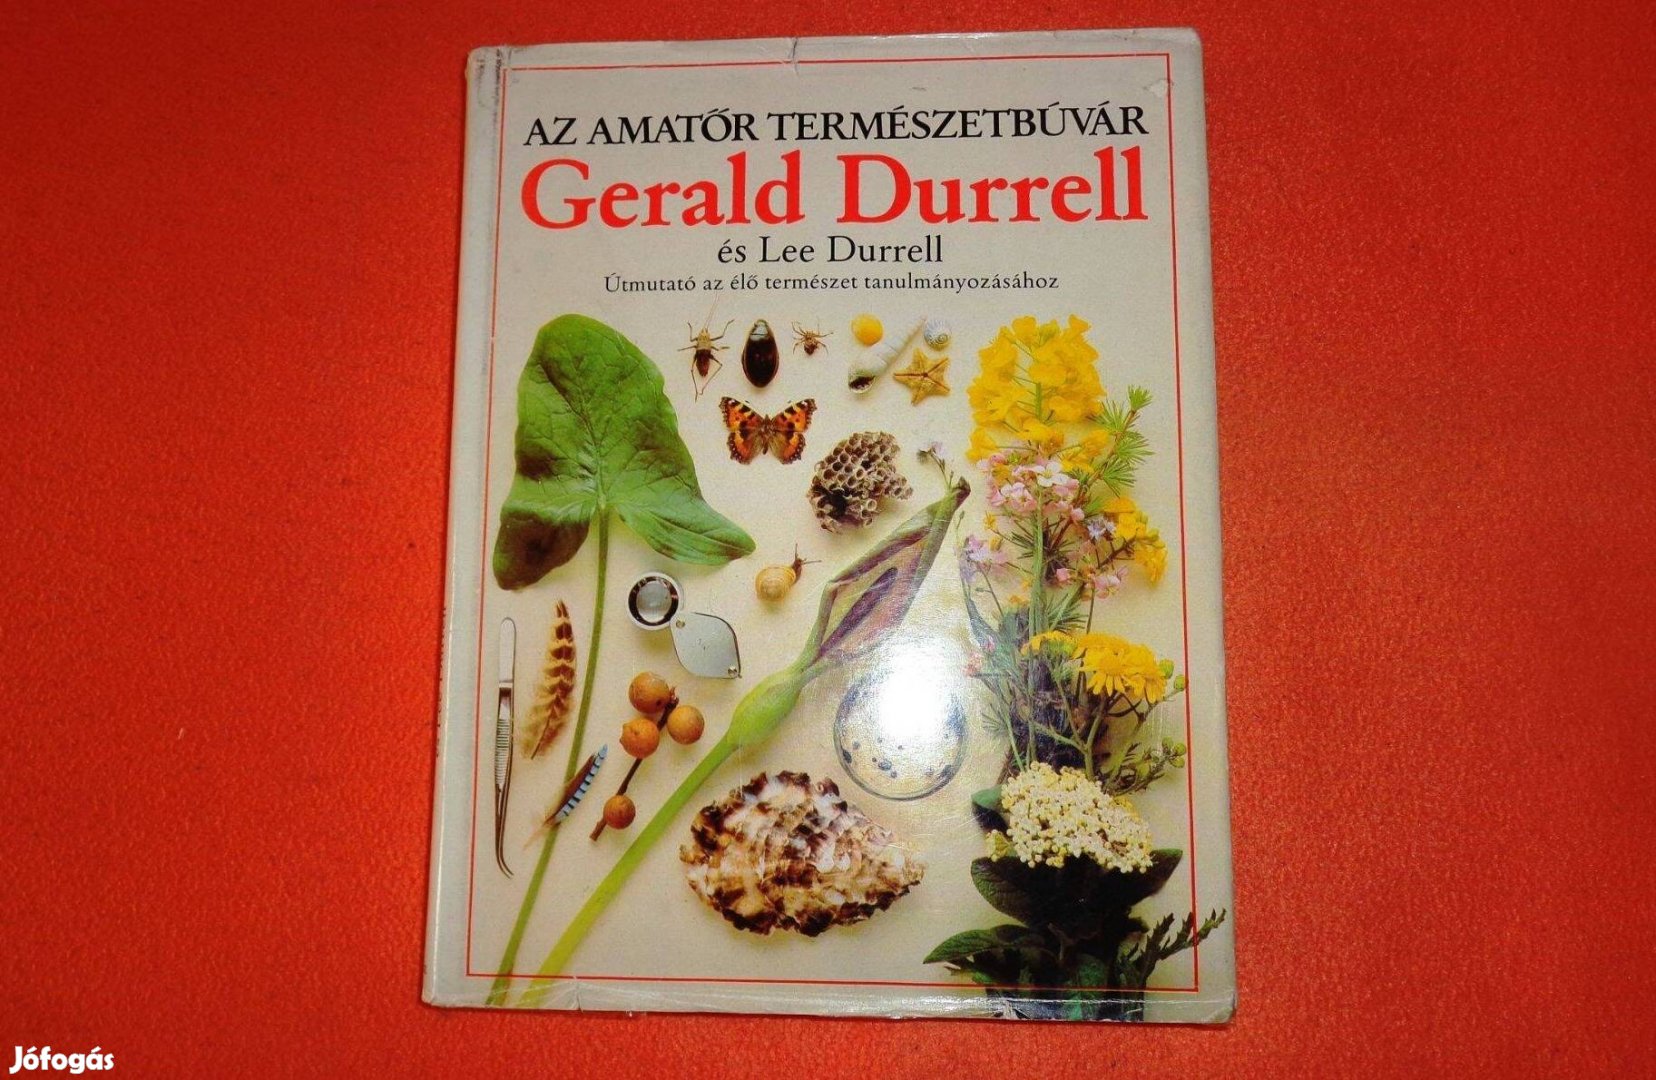 Gerald Durrell: Az amatőr természetbúvár